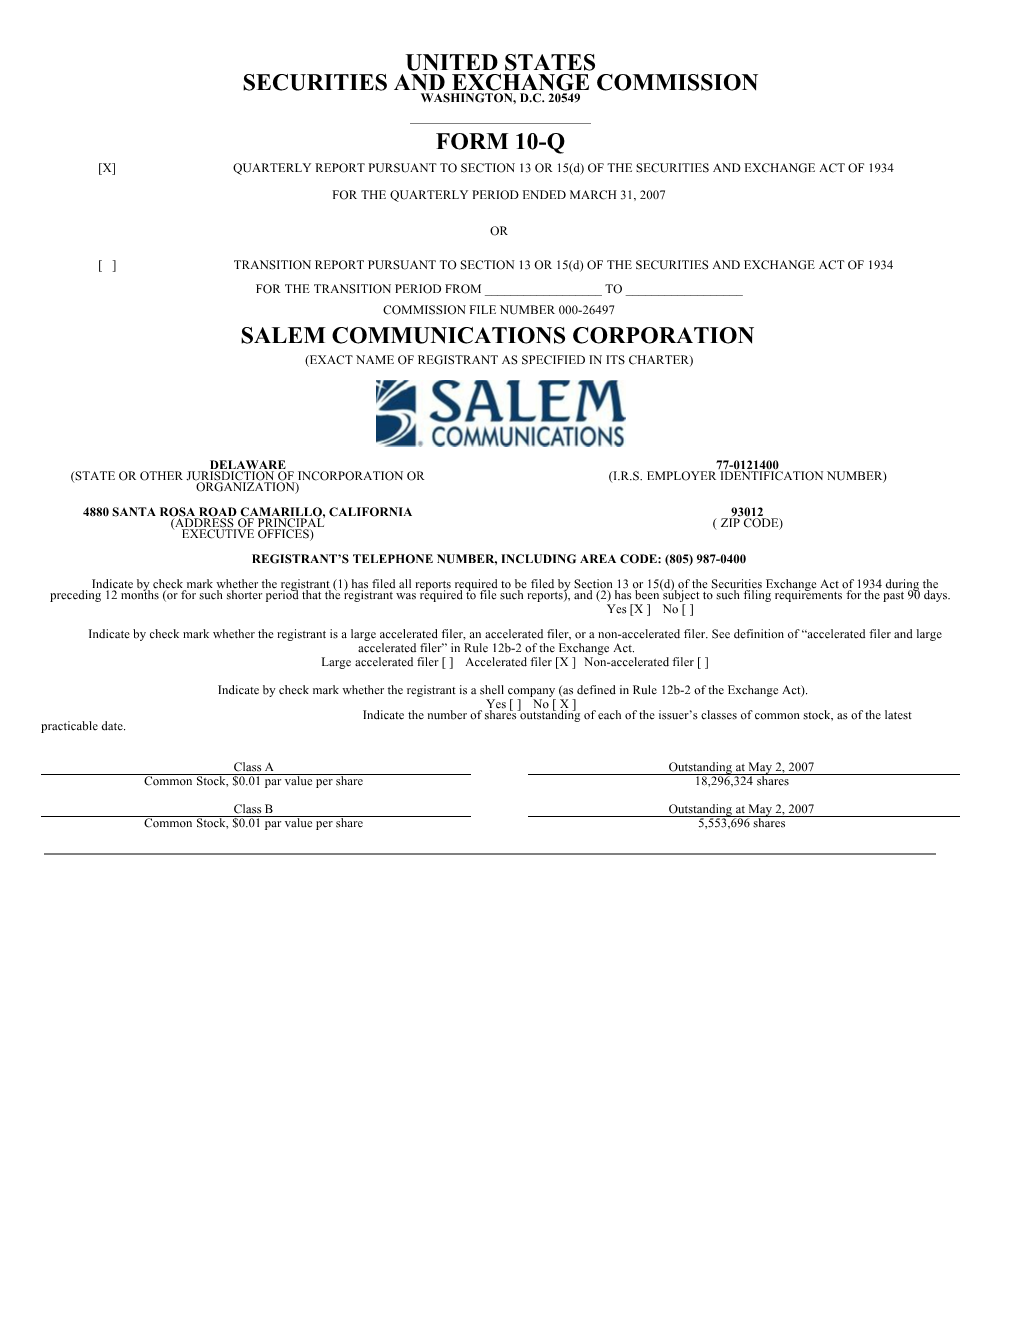 Salem Communications Form 10-Q